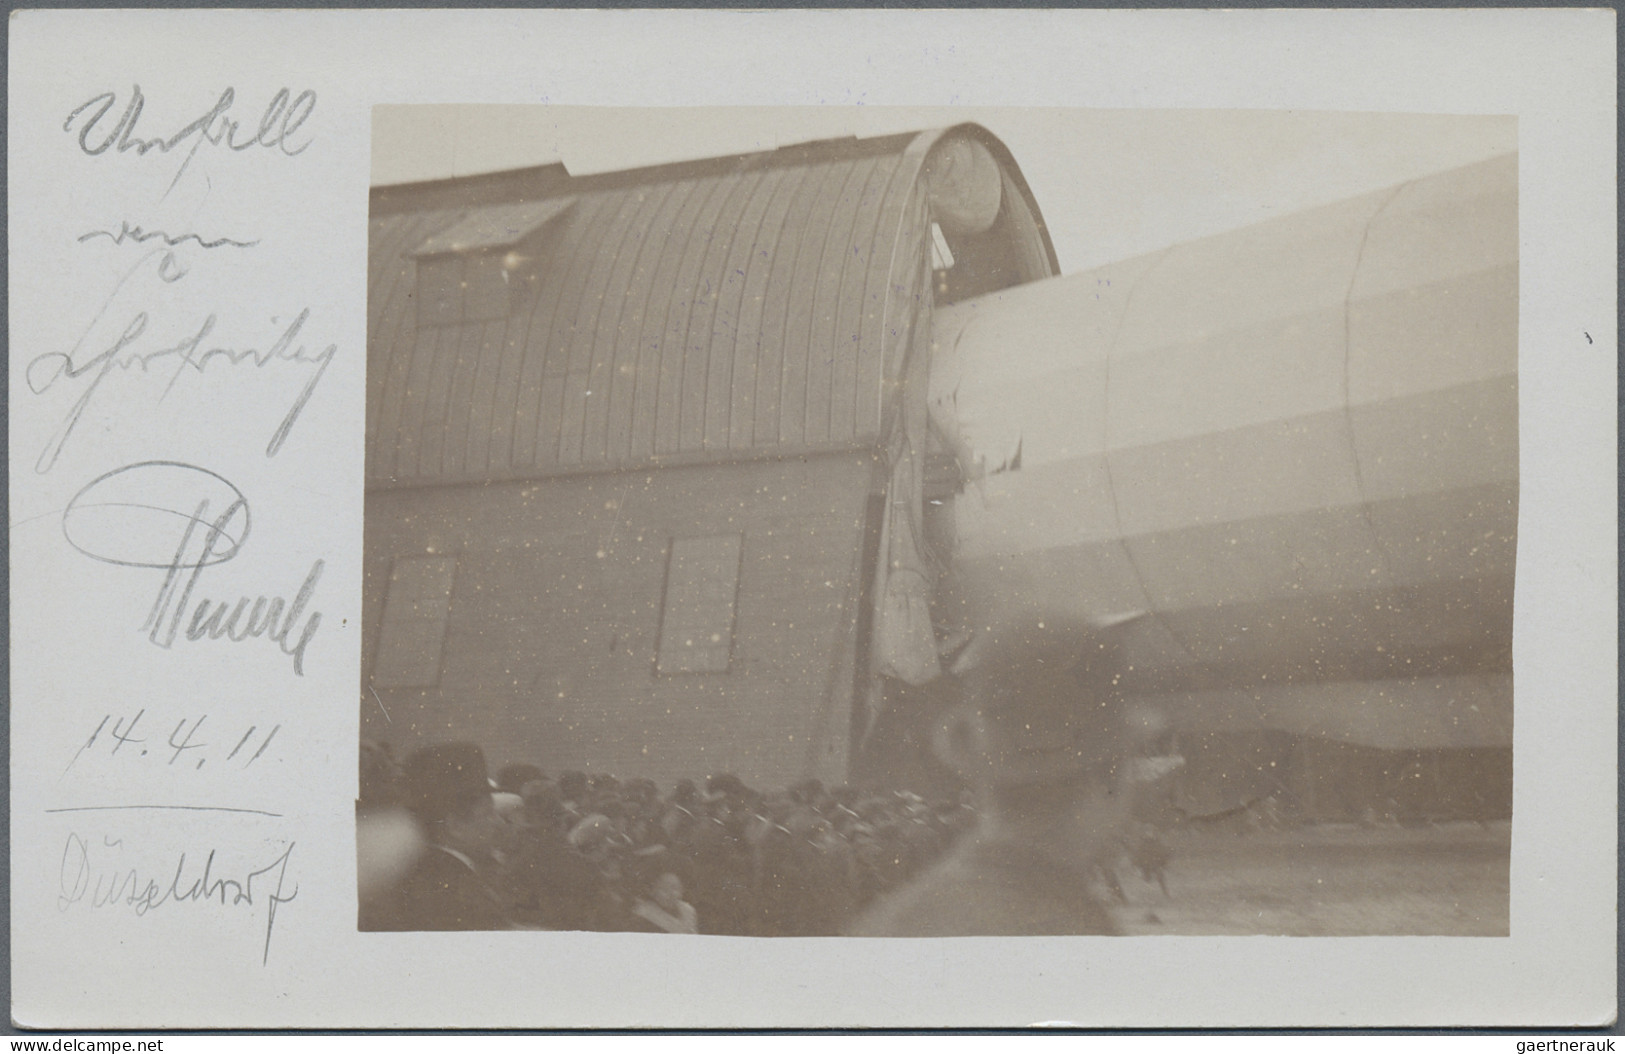 Ansichtskarten: Motive: ZEPPELIN: Ca 185 Zeppelin postcards and a few photos, wi